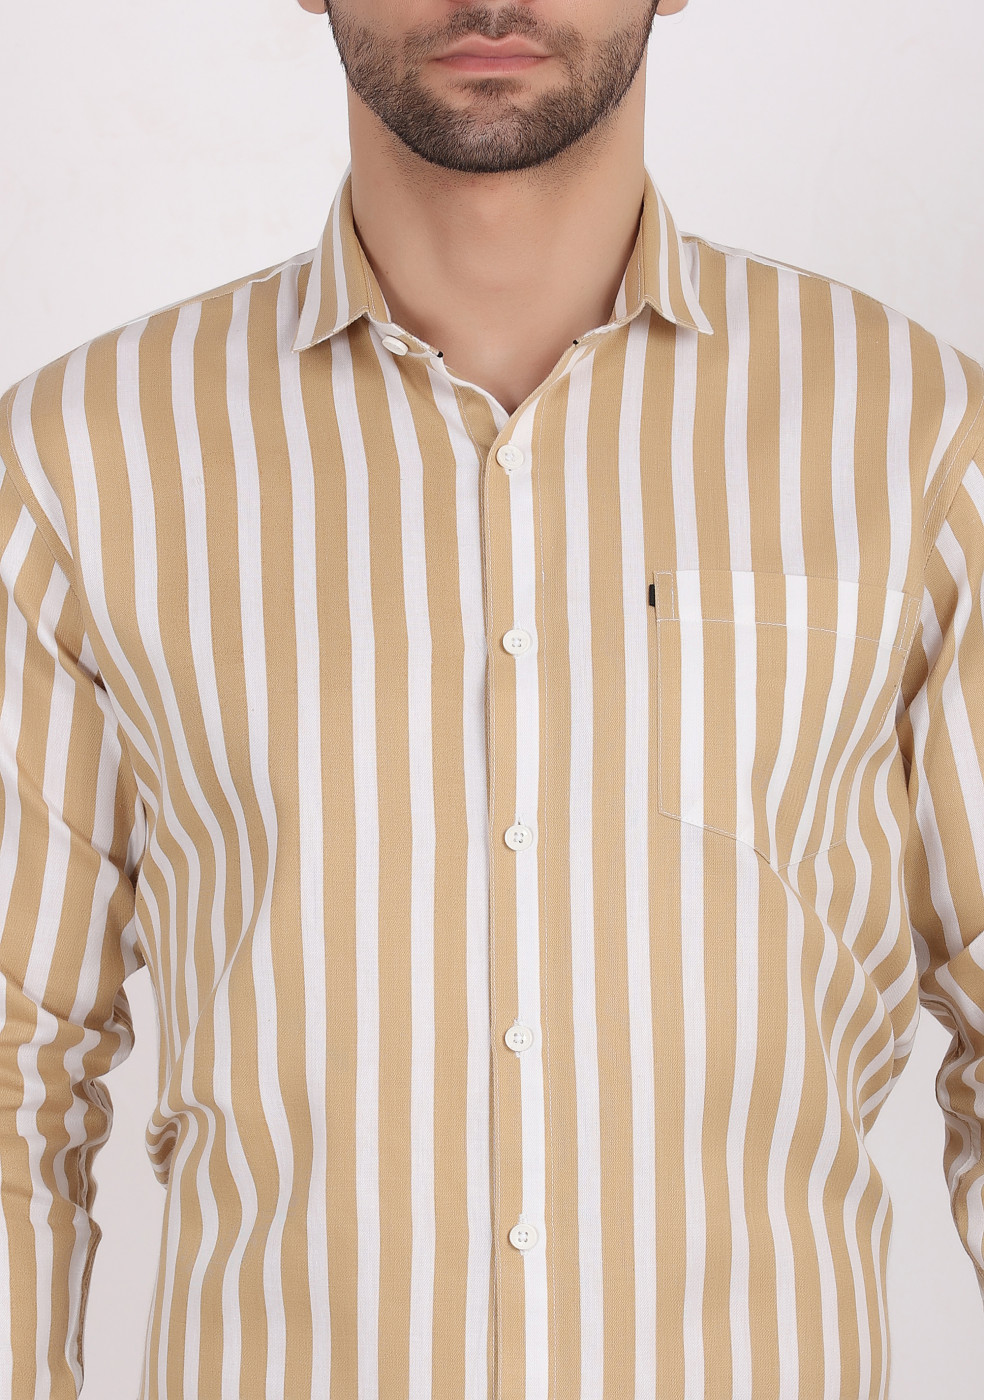 ASHTOM Mustard White Lining Shirt For Men